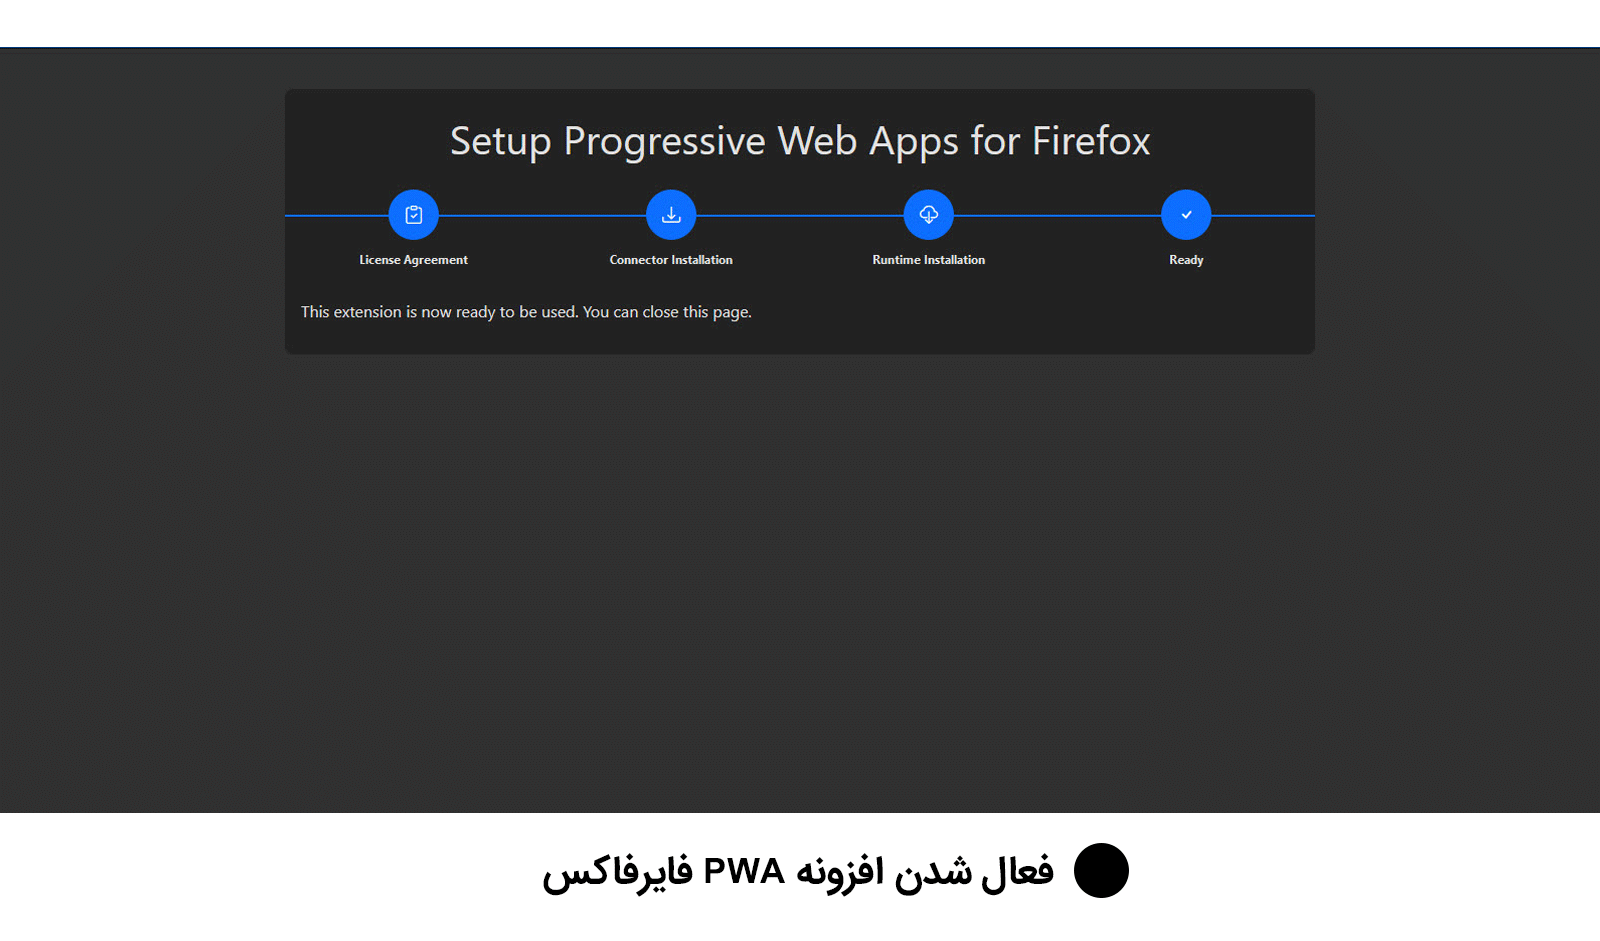 فعال شدن افزونهProgressive Web Apps for Firefox